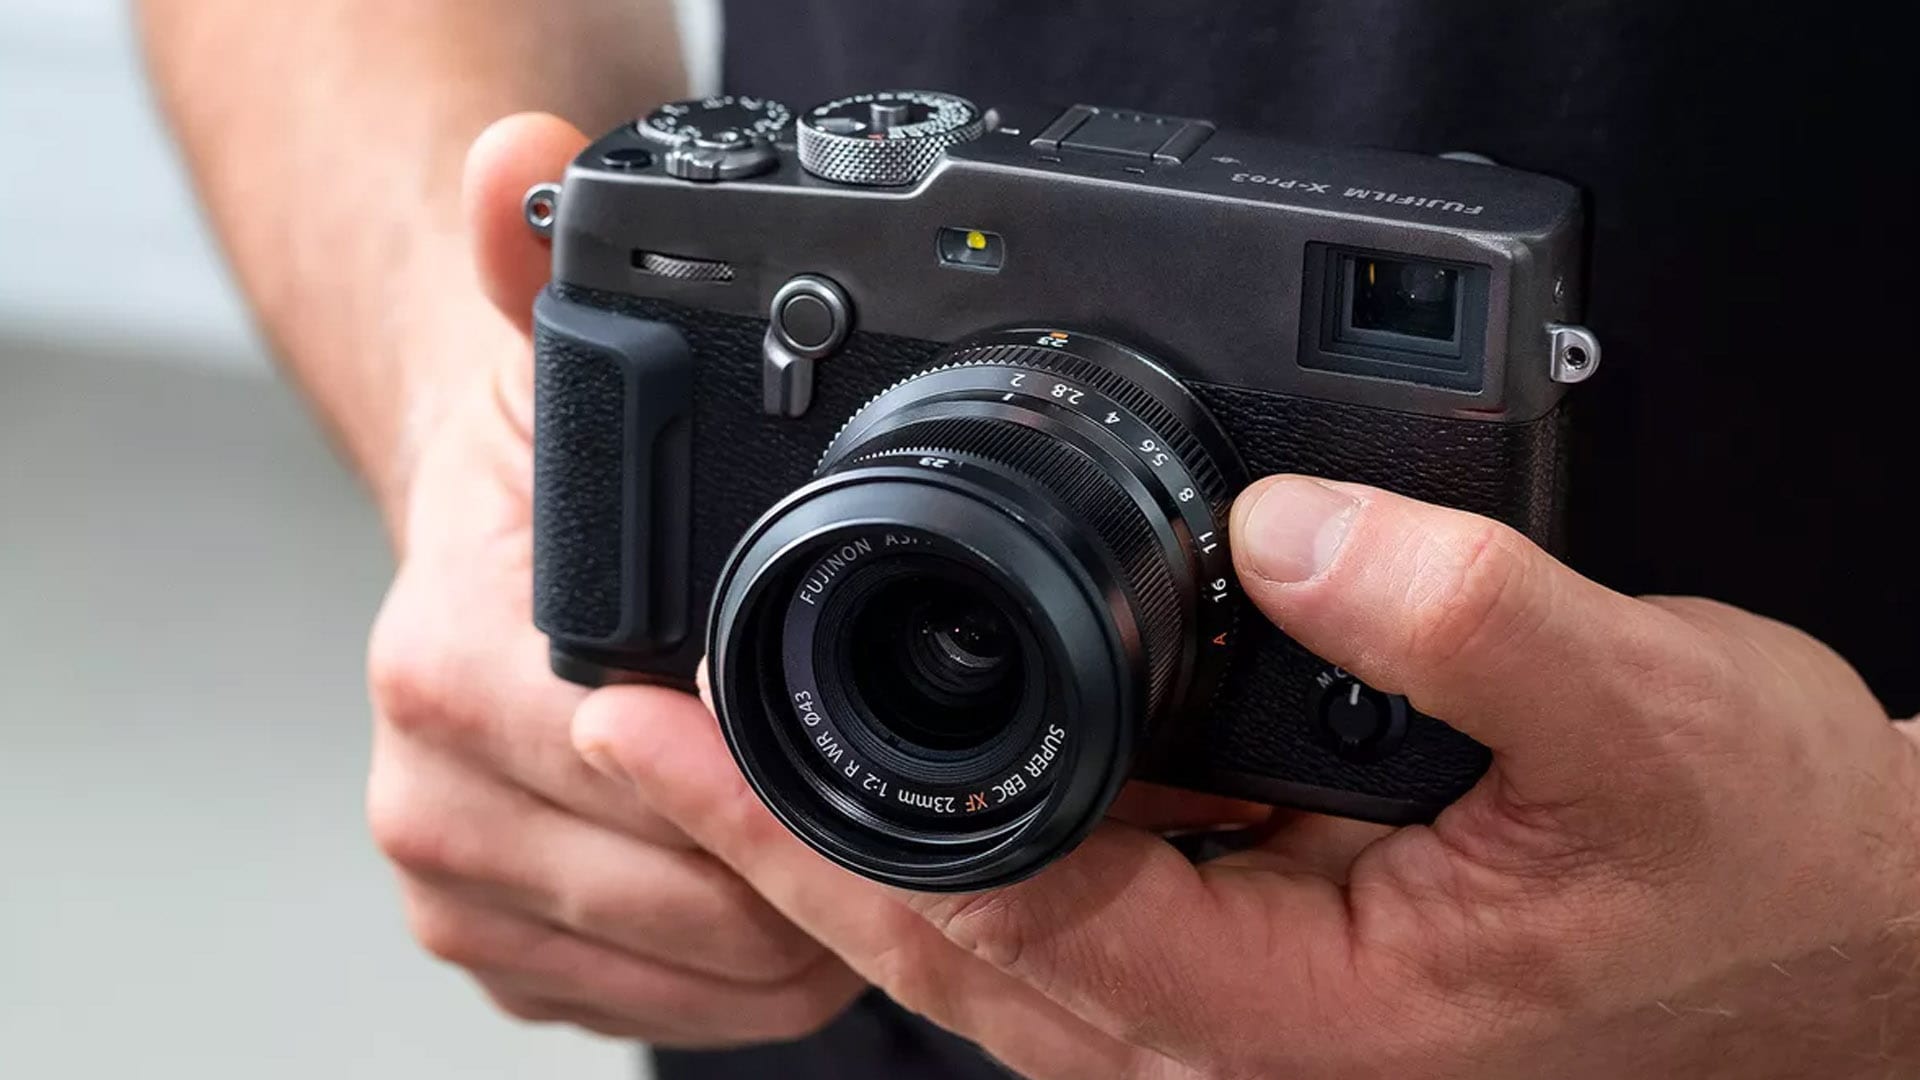 شركة Fujifilm تعلن رسمياً عن الكاميرا الجديدة X-Pro3 بتقنية التركيز في الإضاءة المنخفضة بأداء ممتاز